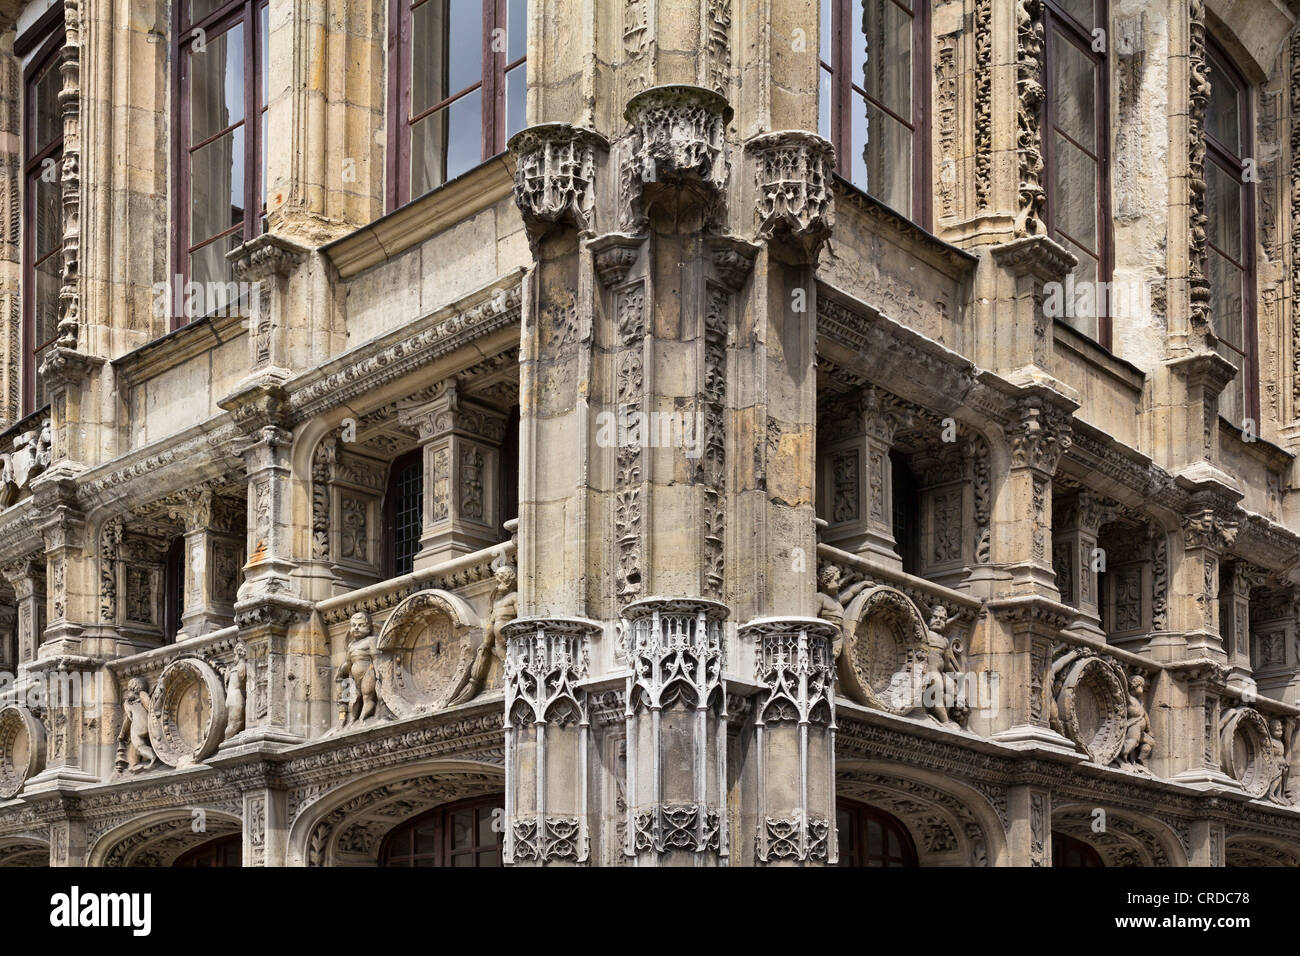 16e siècle Office de Tourisme de Rouen, ancien inspecteur des impôts's building, Rouen, France Banque D'Images